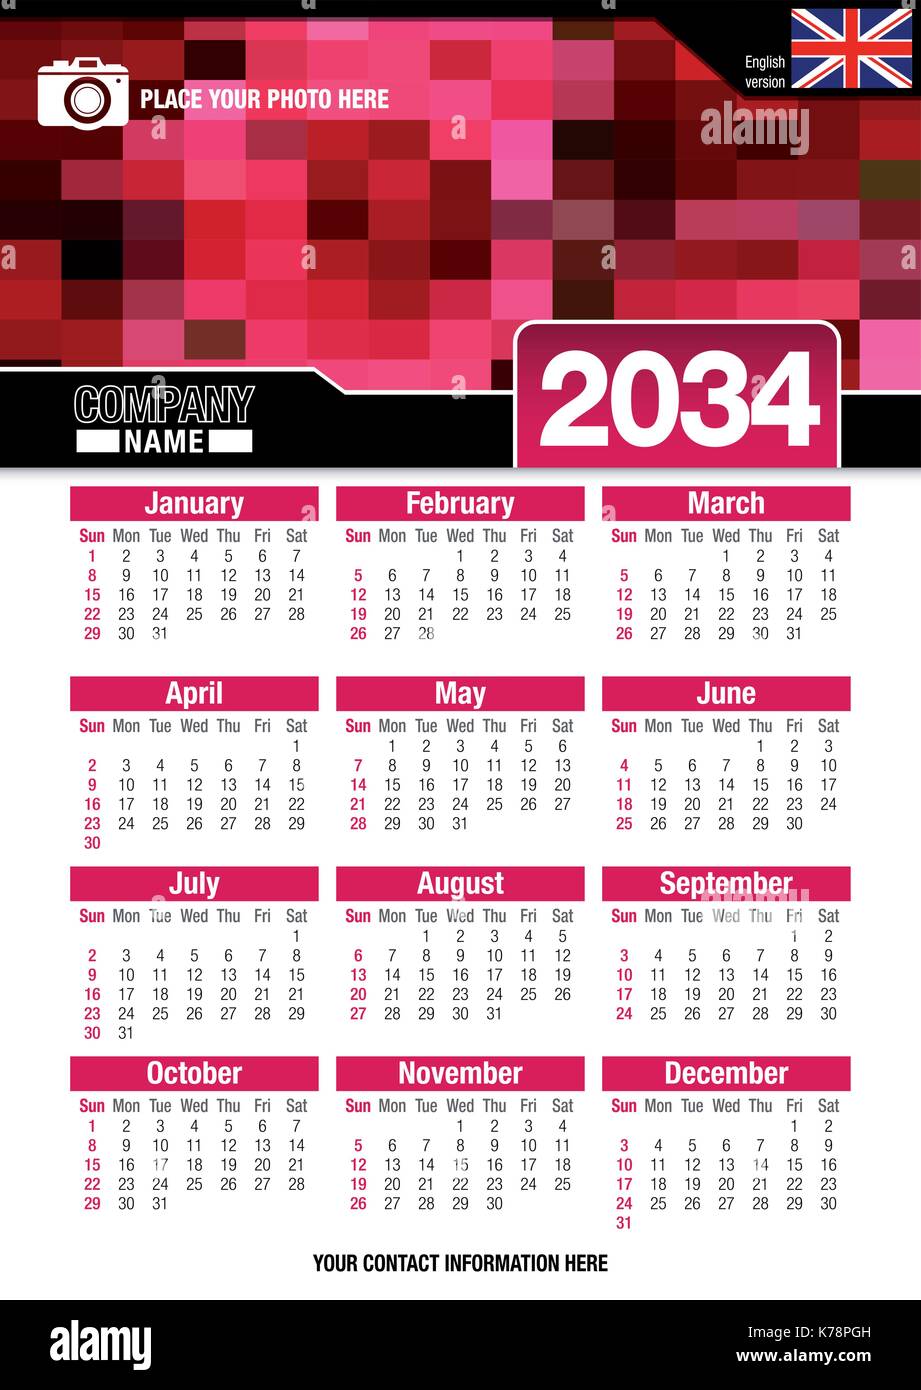 Utile calendario da parete 2034 con design di colori rosso mosaico. Formato A4 verticale. Dimensioni: 210mm x 297mm. Versione Inglese - immagine vettoriale Illustrazione Vettoriale